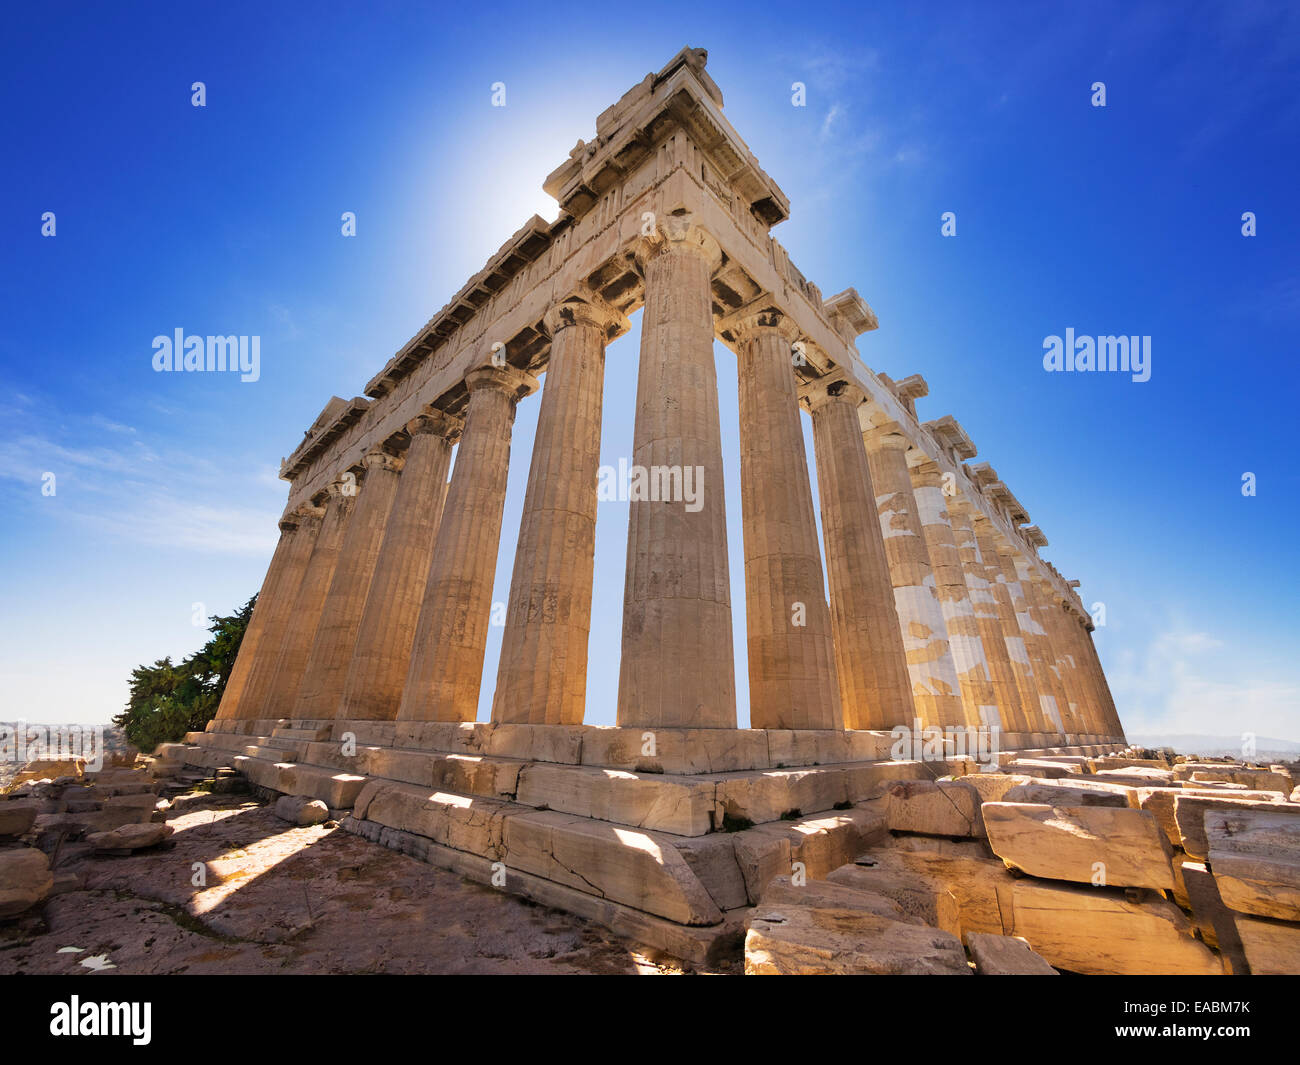 Parthenon temple on the Acropolis of Athens,Greece Stock Photo